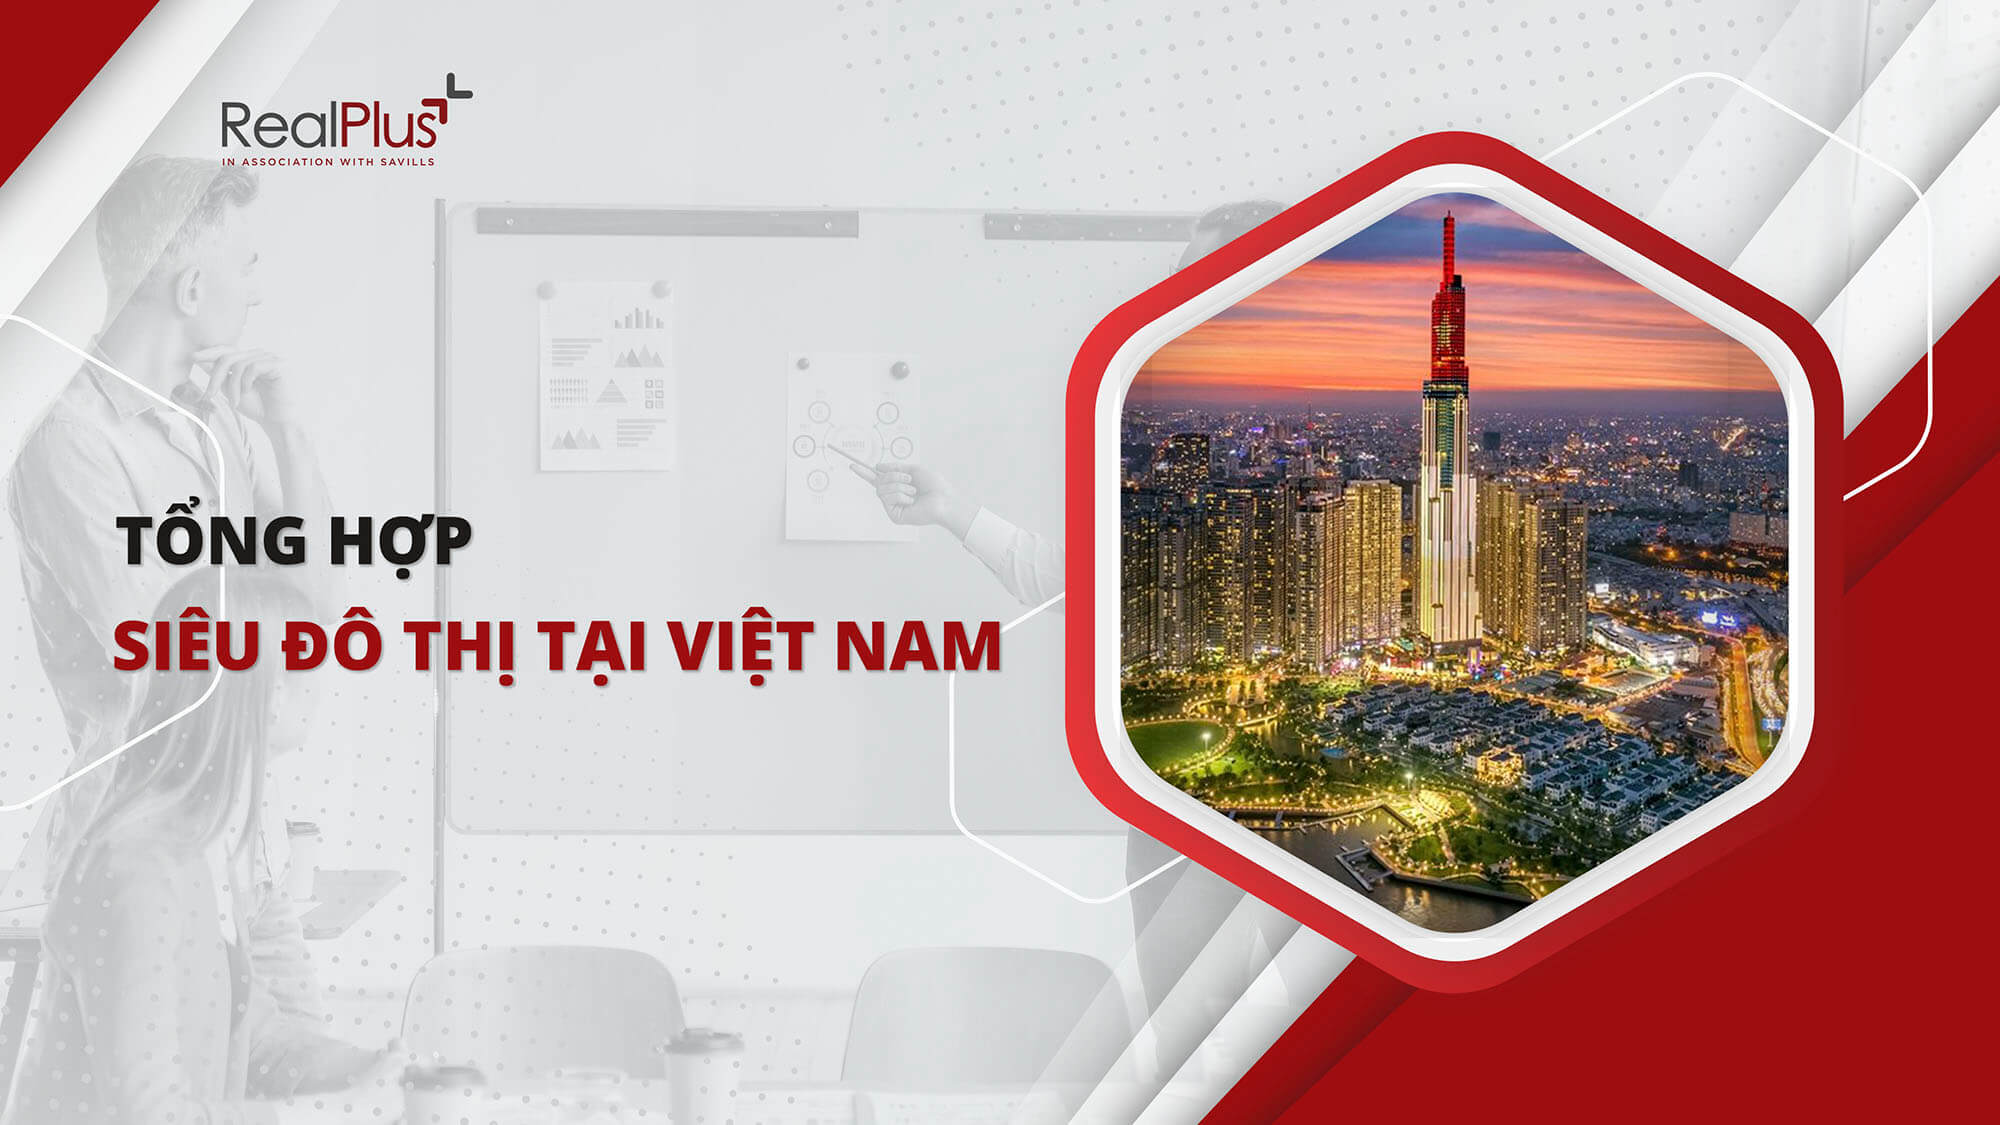 Siêu đô thị là gì? Tổng hợp các siêu đô thị ở Việt Nam